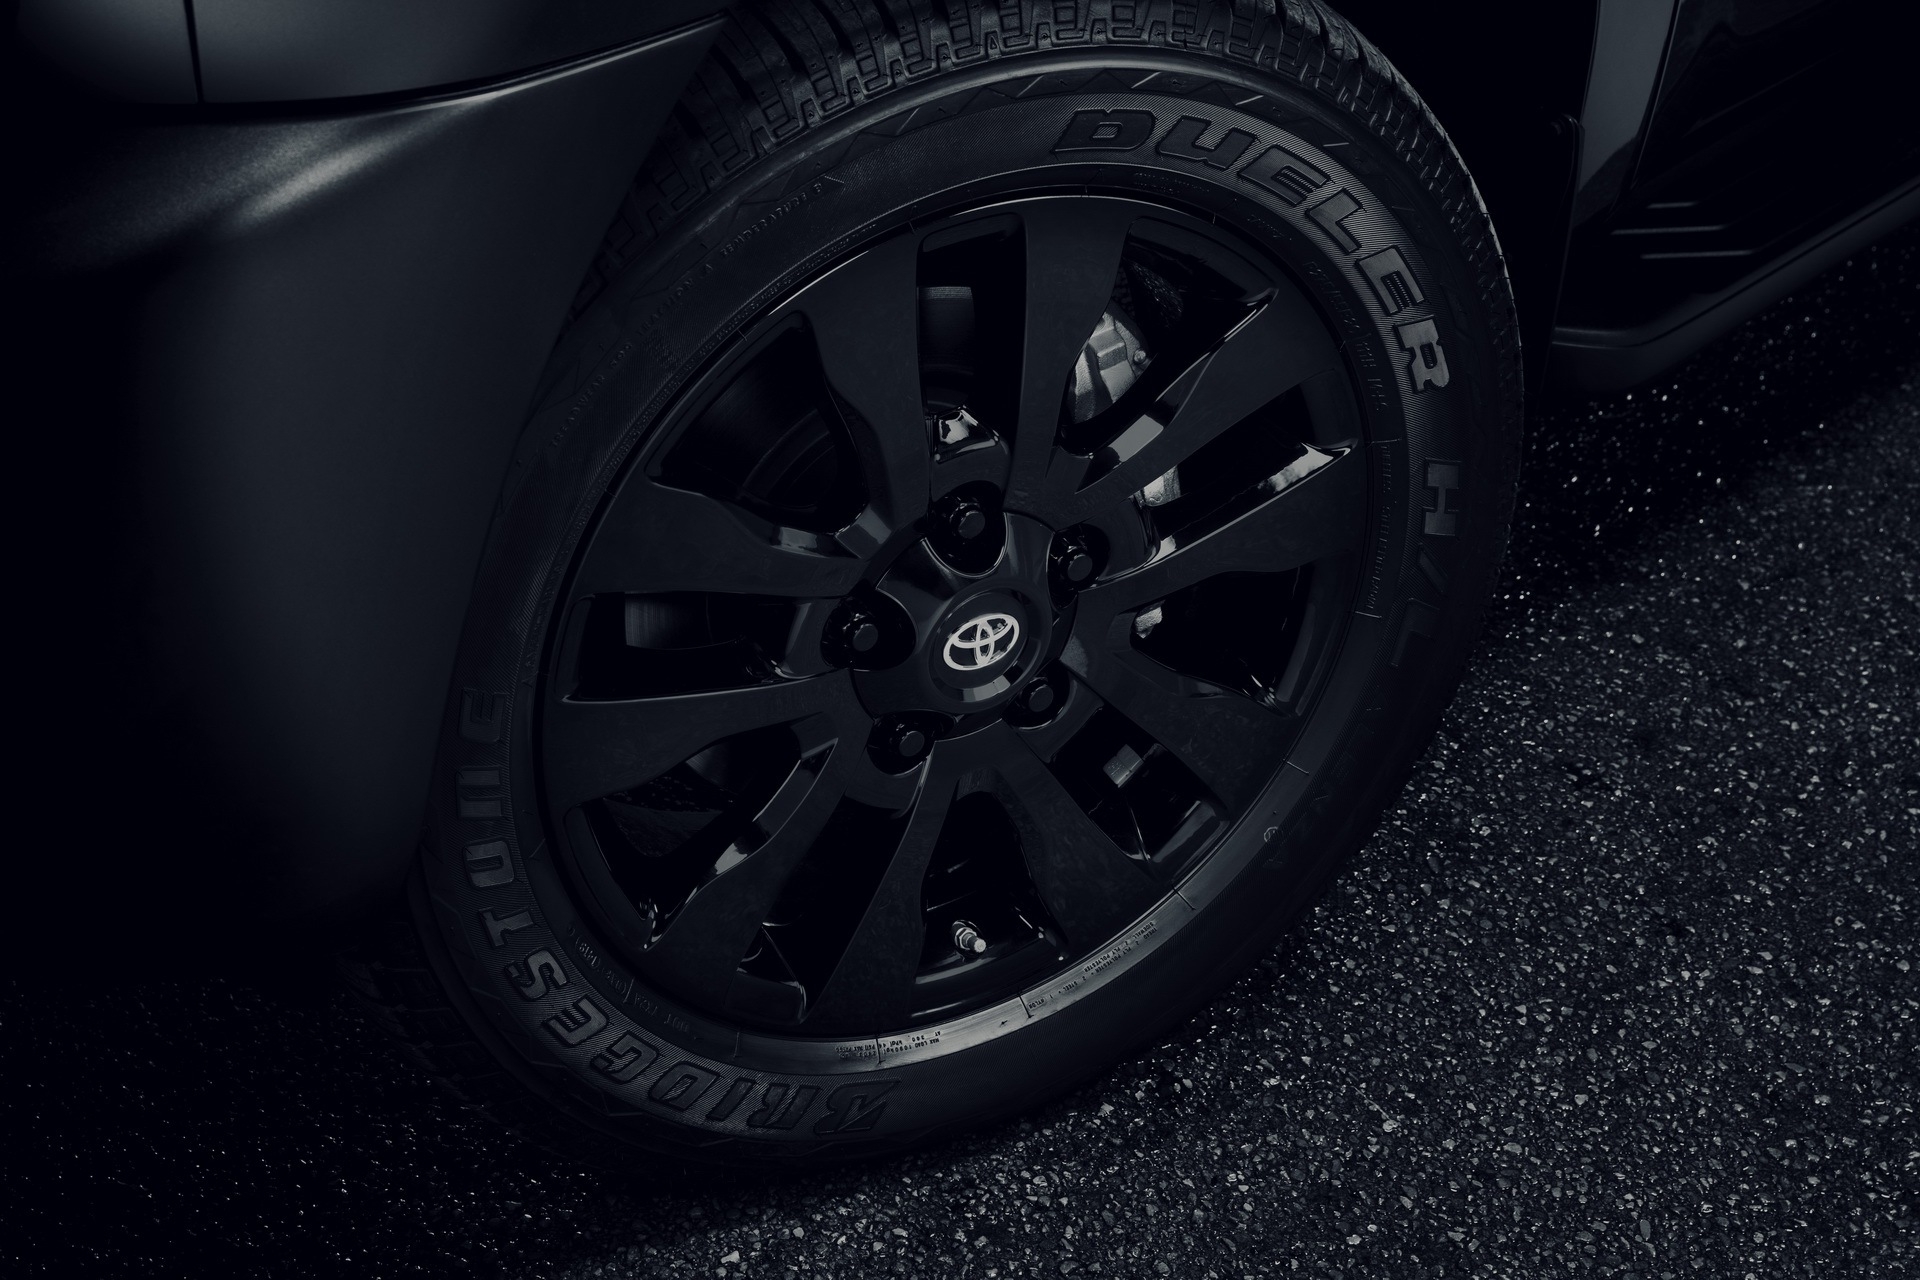 สีดำมาแรง! Toyota Sequoia 2021 อเนกประสงค์ไซส์ใหญ่รุ่นพิเศษ Nightshade Edition